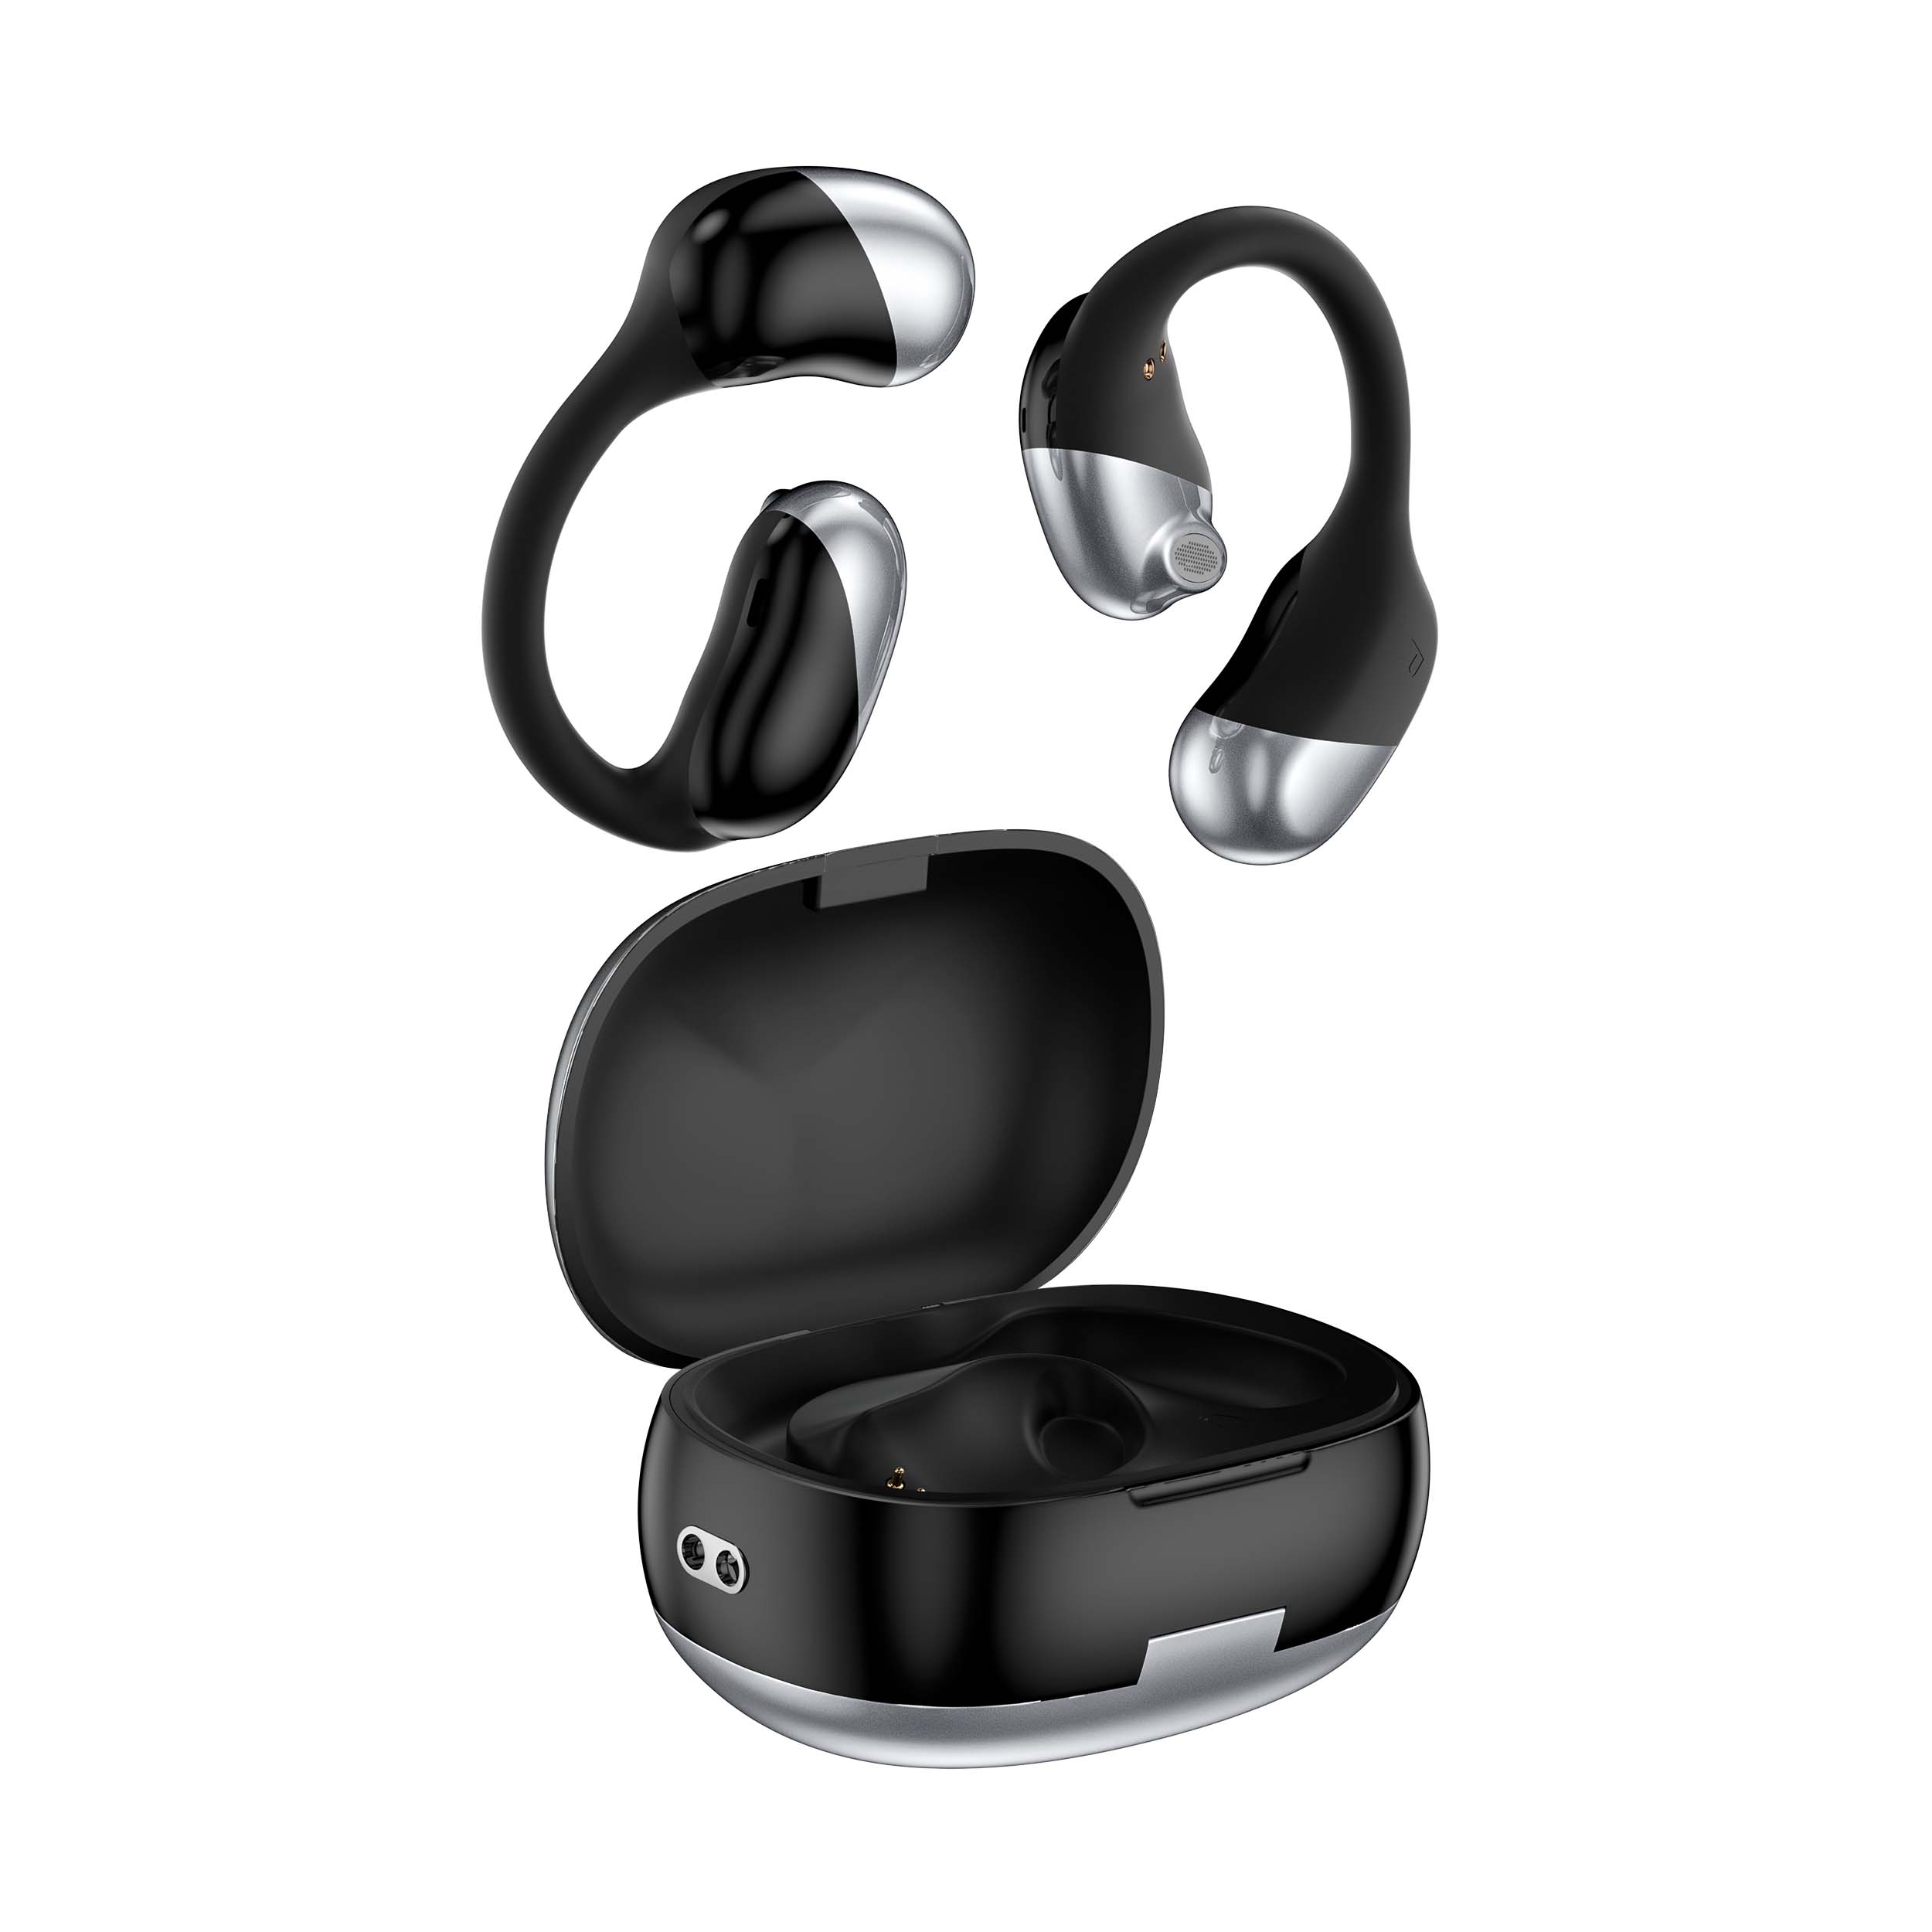 Vente en gros de nouveaux produits personnalisés OWS Open Wireless Bose Wireless Headphones avec remise populaire